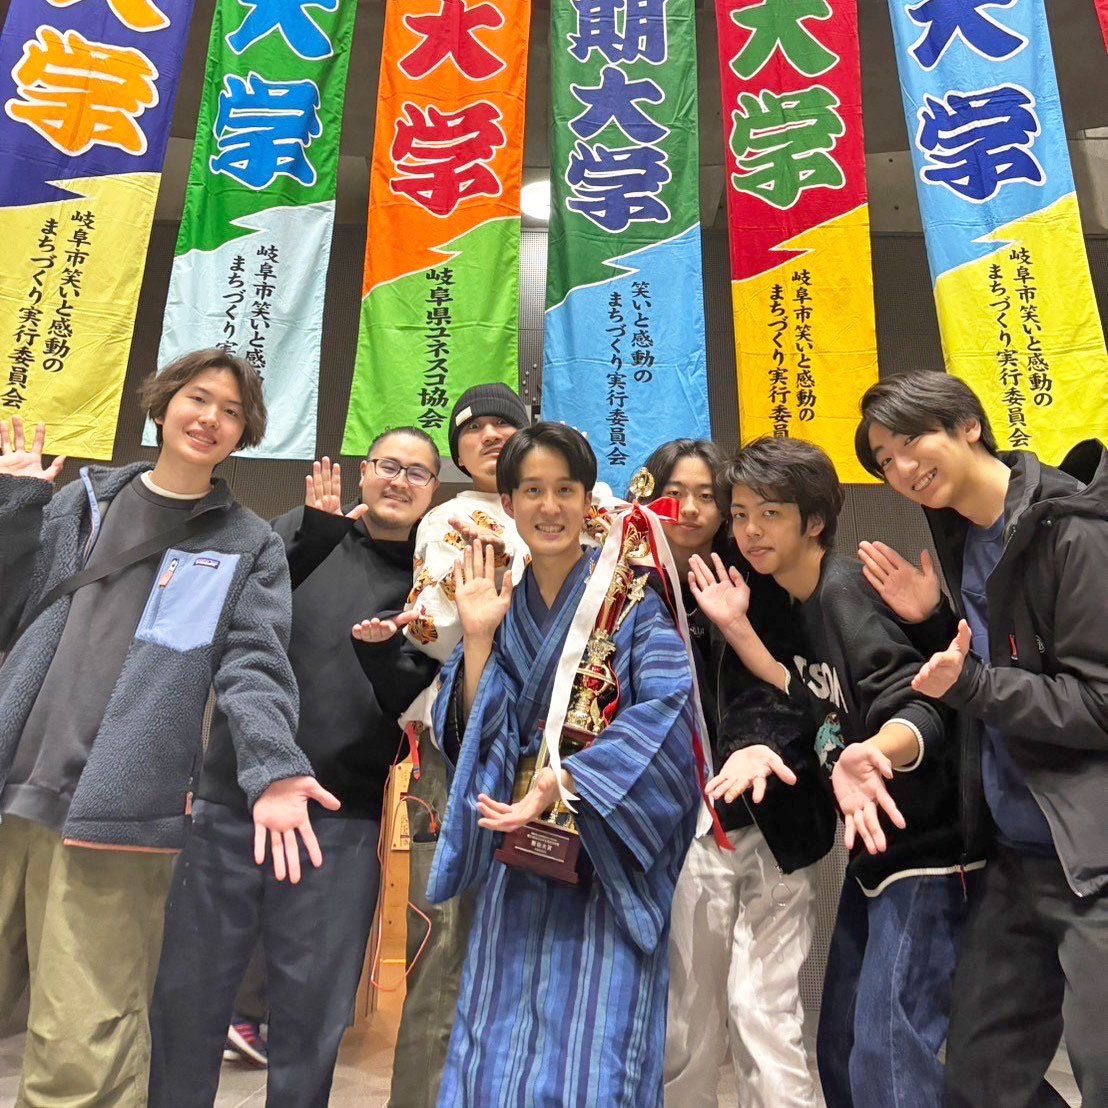 明日3月20日（水・祝）の午前5時10分よりNHK総合にて、「笑う岐阜には福来る 学生落語日本一に挑む若者たち 全日本学生落語選手権策伝大賞」が放送予定です！在学生の早瀬太亮さん（文学部・2年）が大賞（1位）に輝いていますので、ぜひご注目ください！ sakuden.jp/list/report/ho… #法政大学